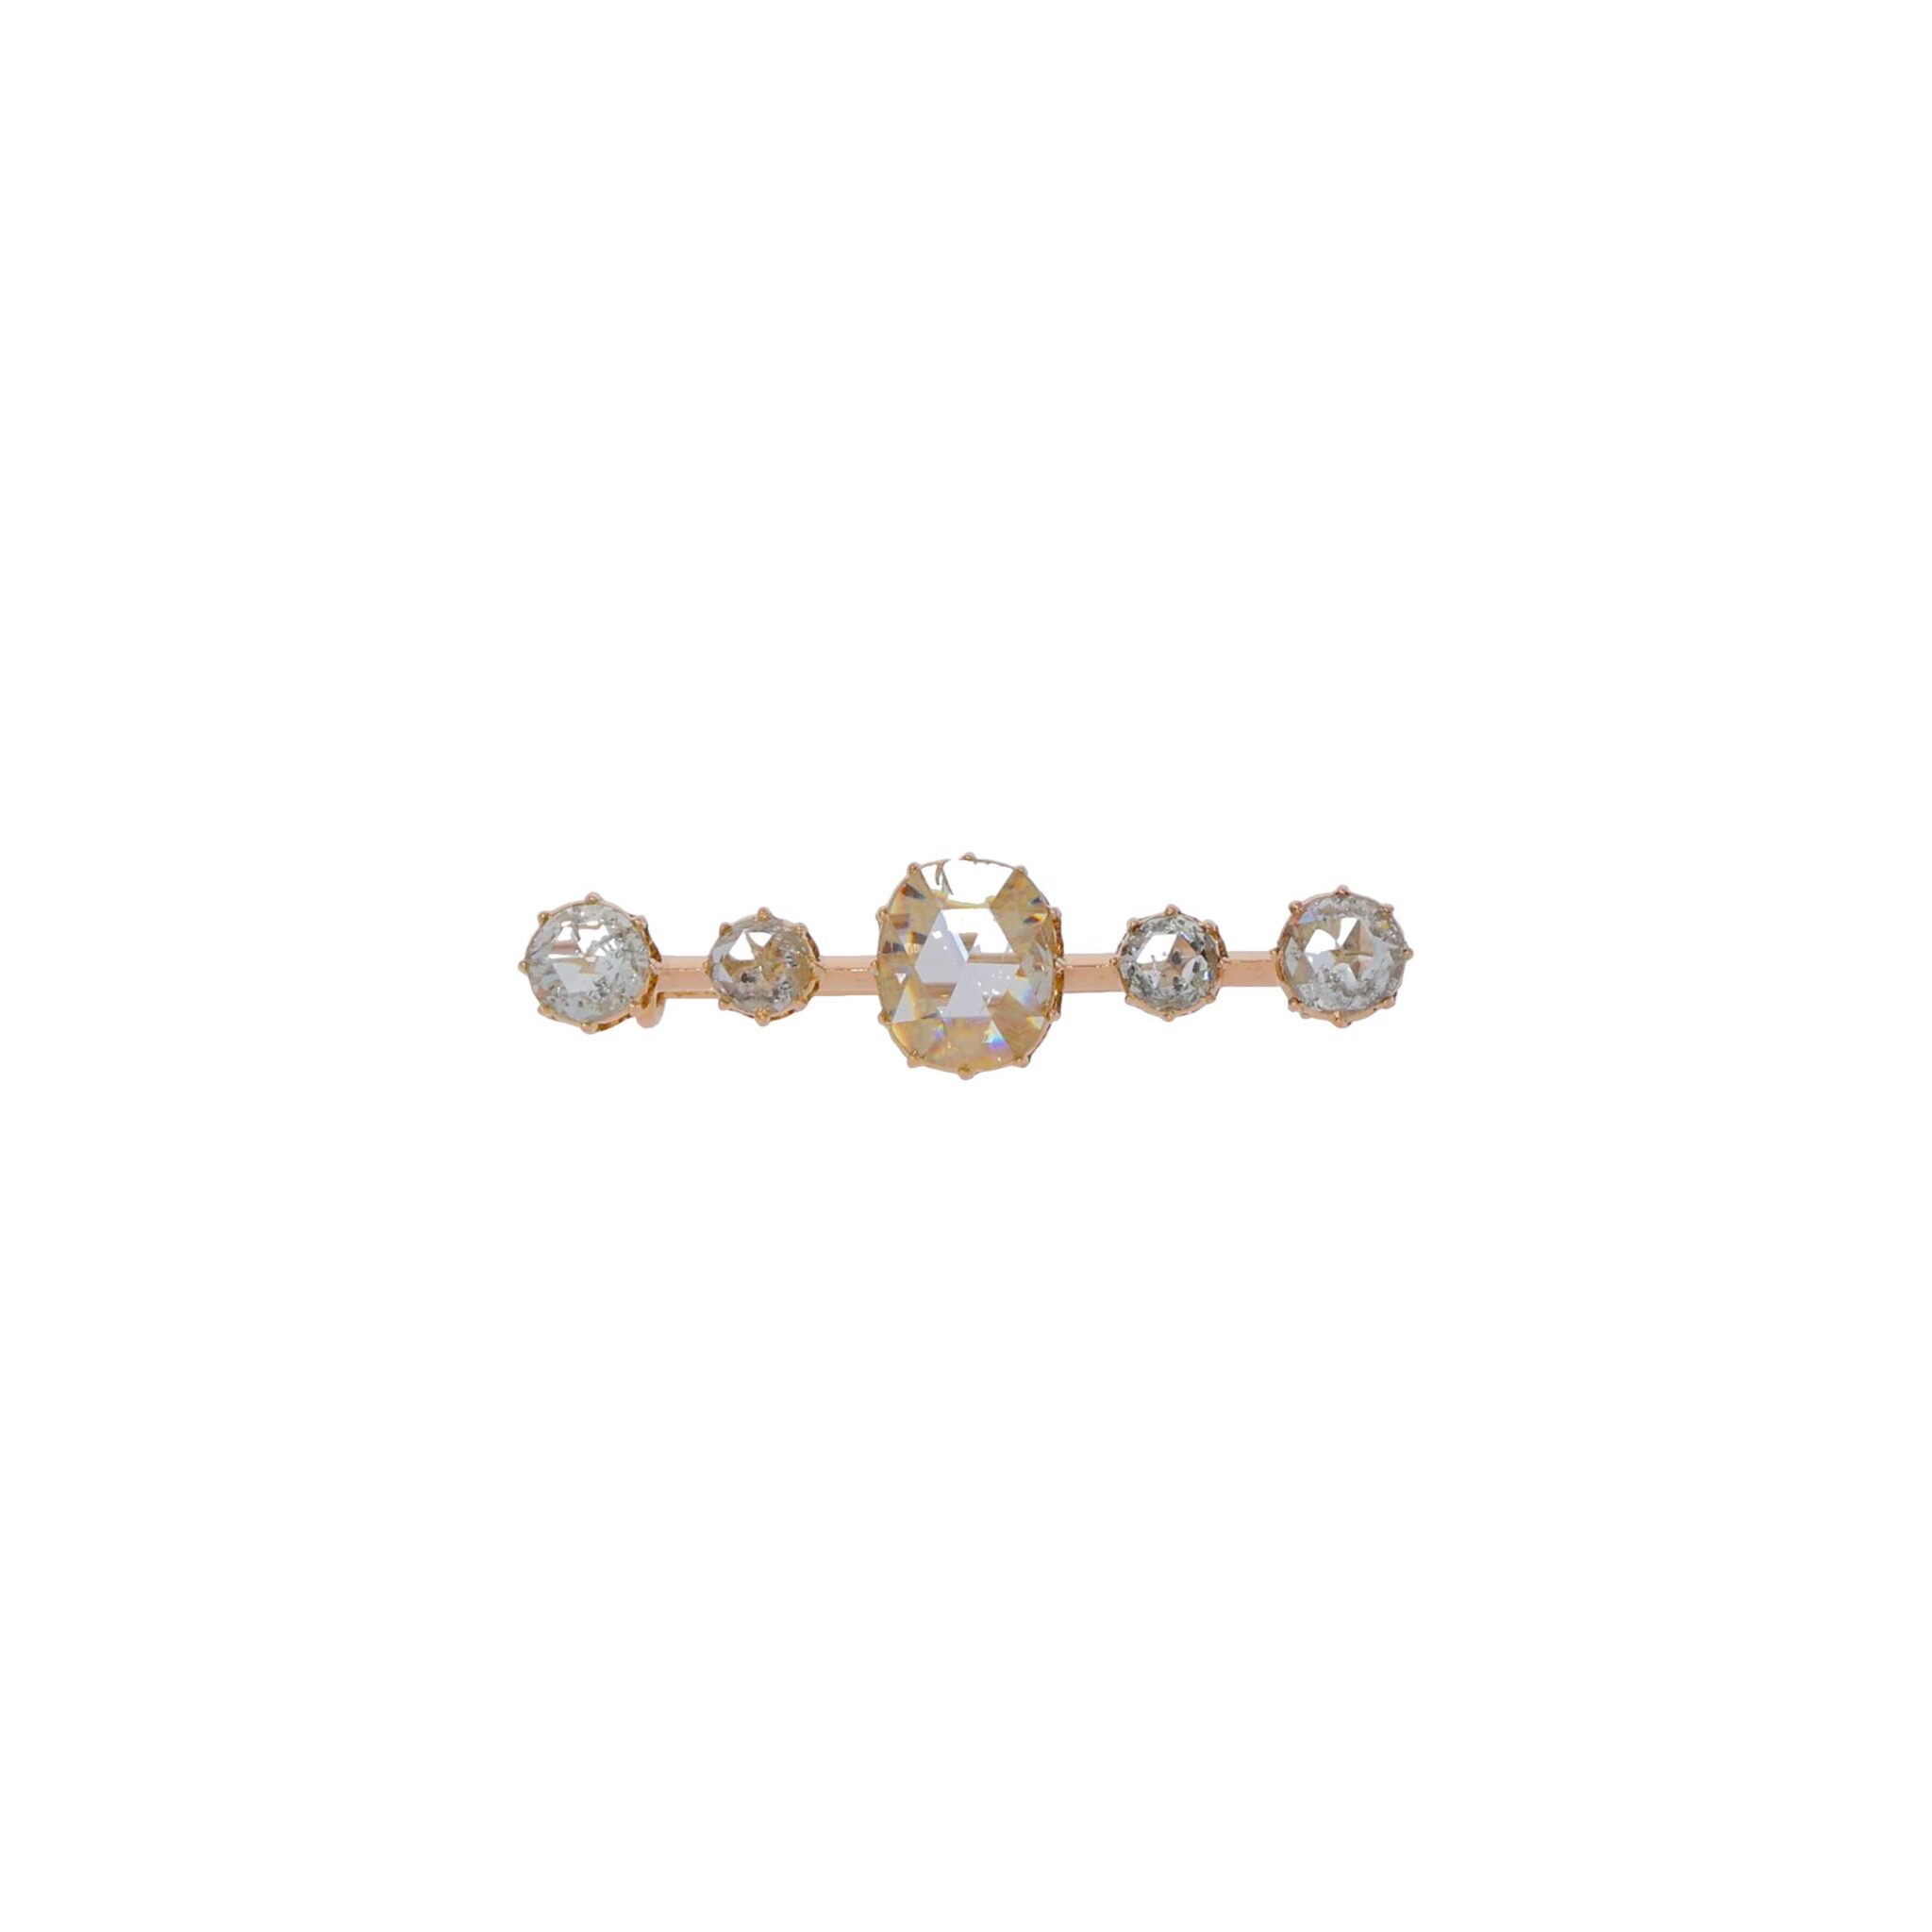 Diamant Rosen Brosche Gelbgold 750 / 18K mit ins. 1,5ct